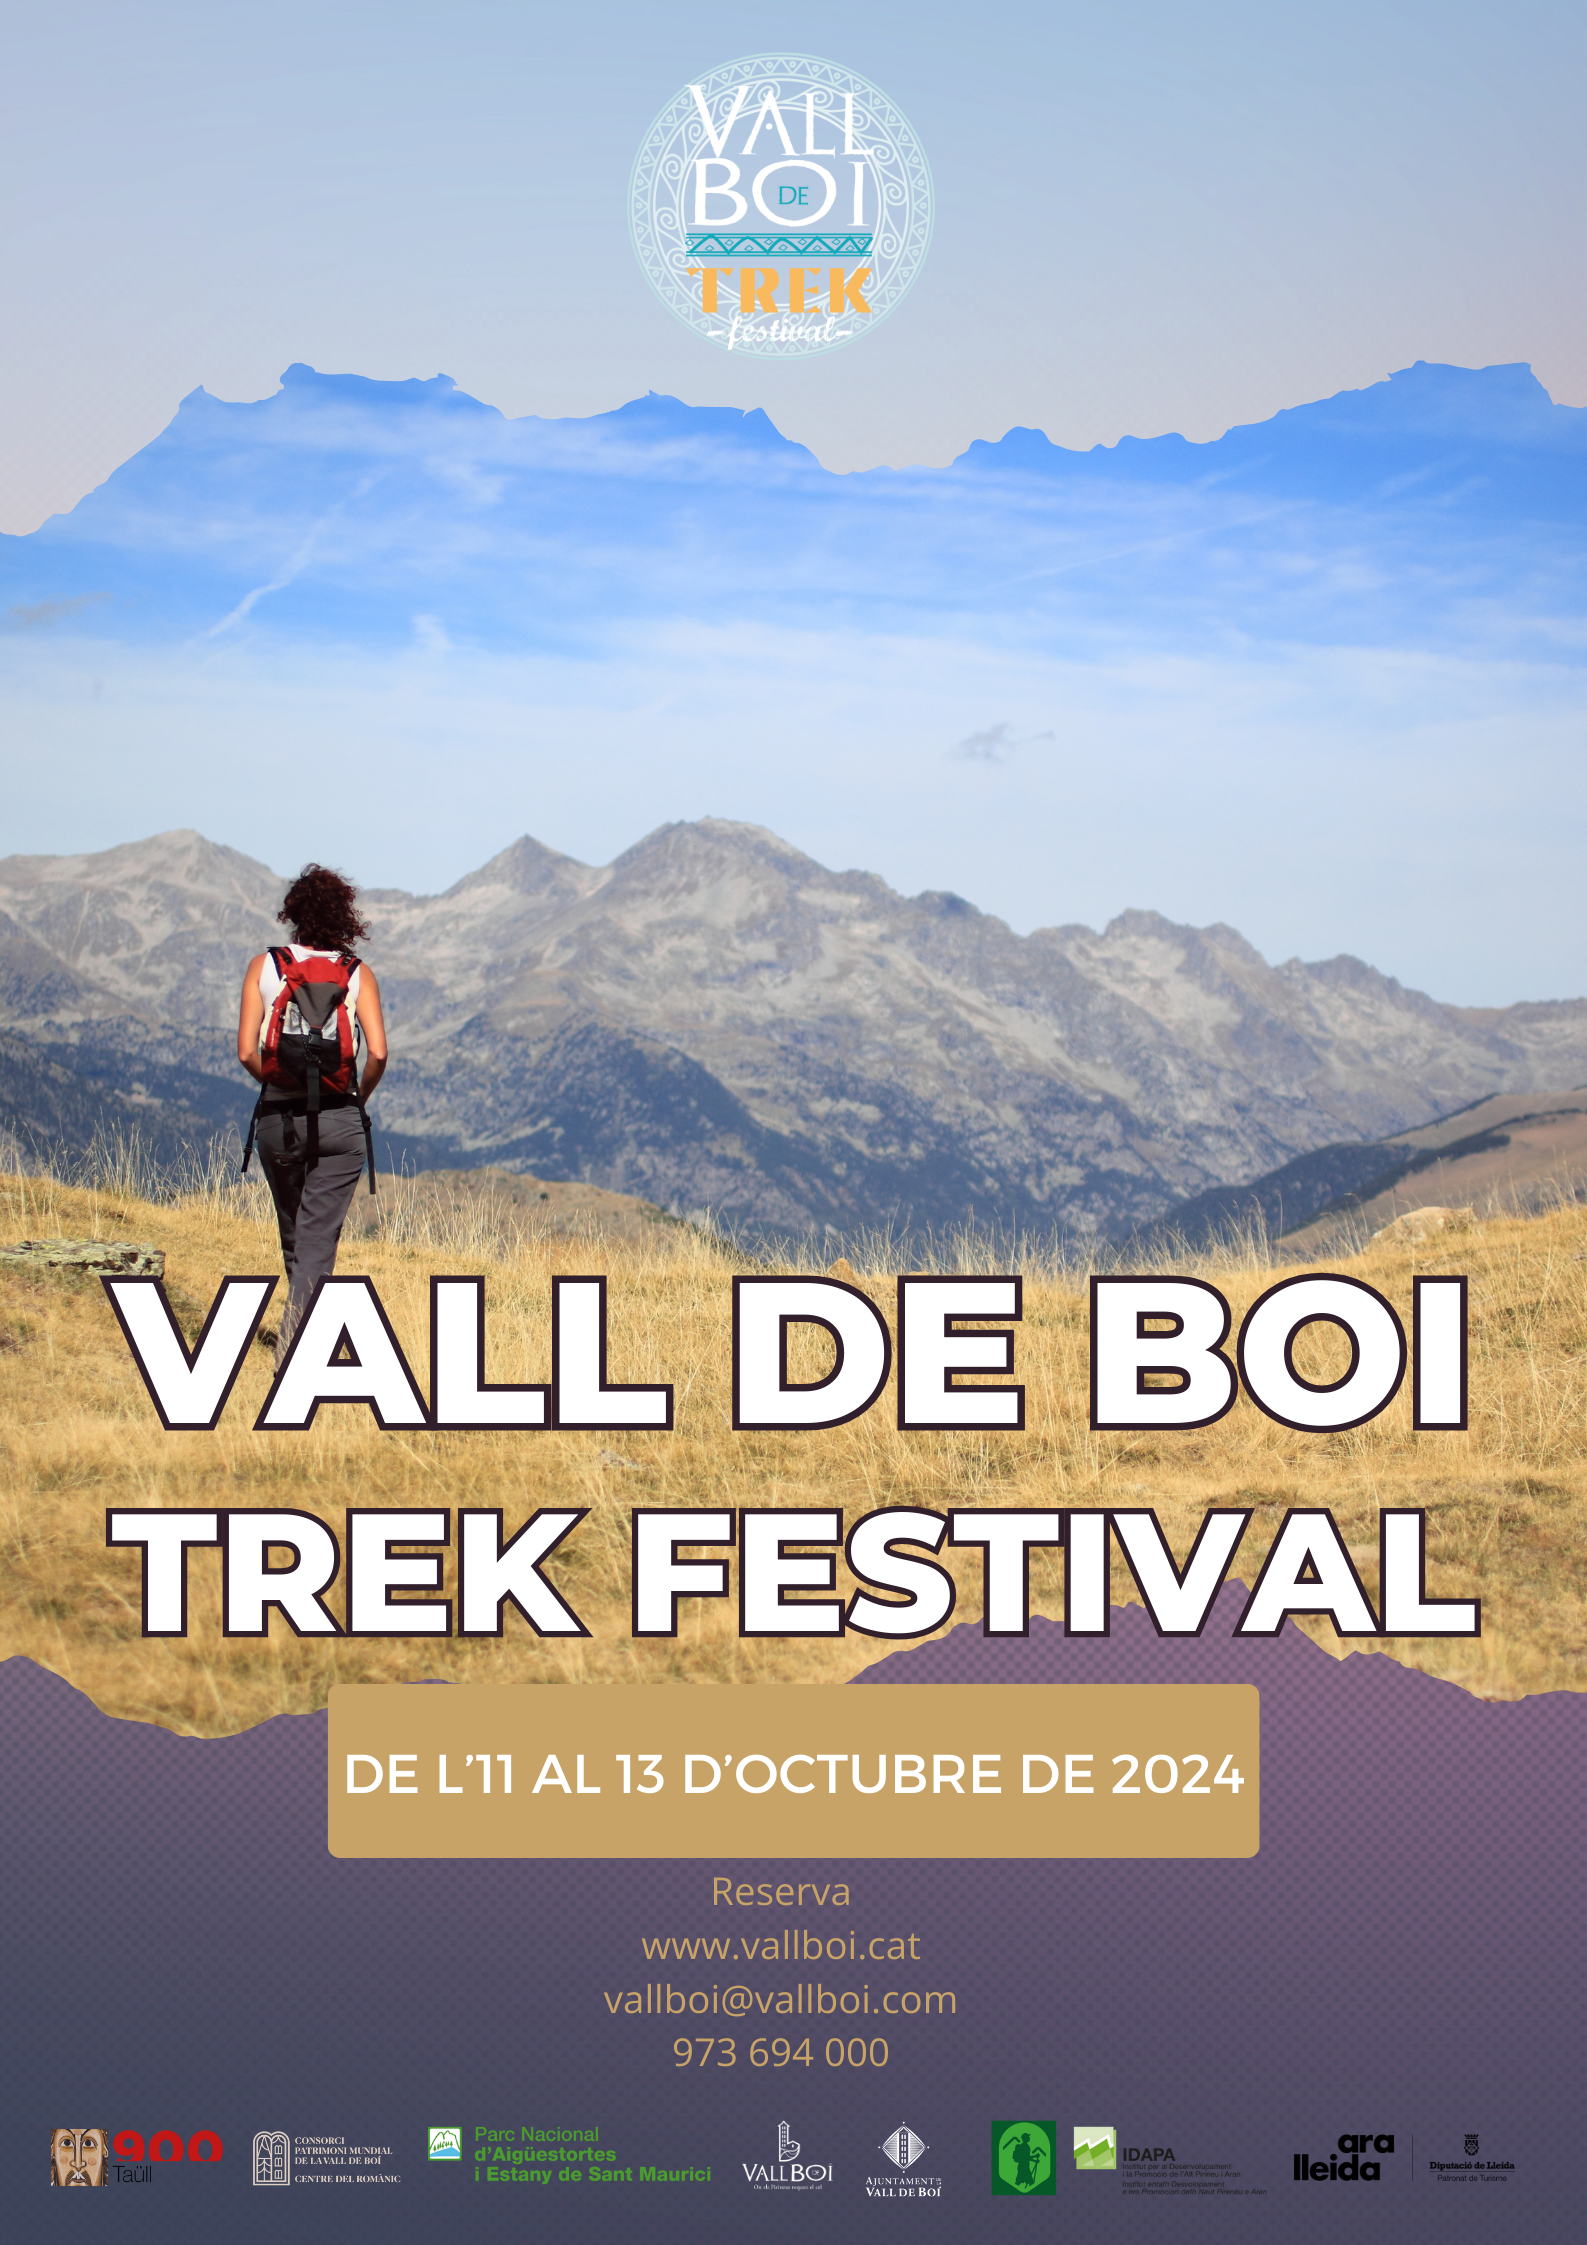 Trek Festival